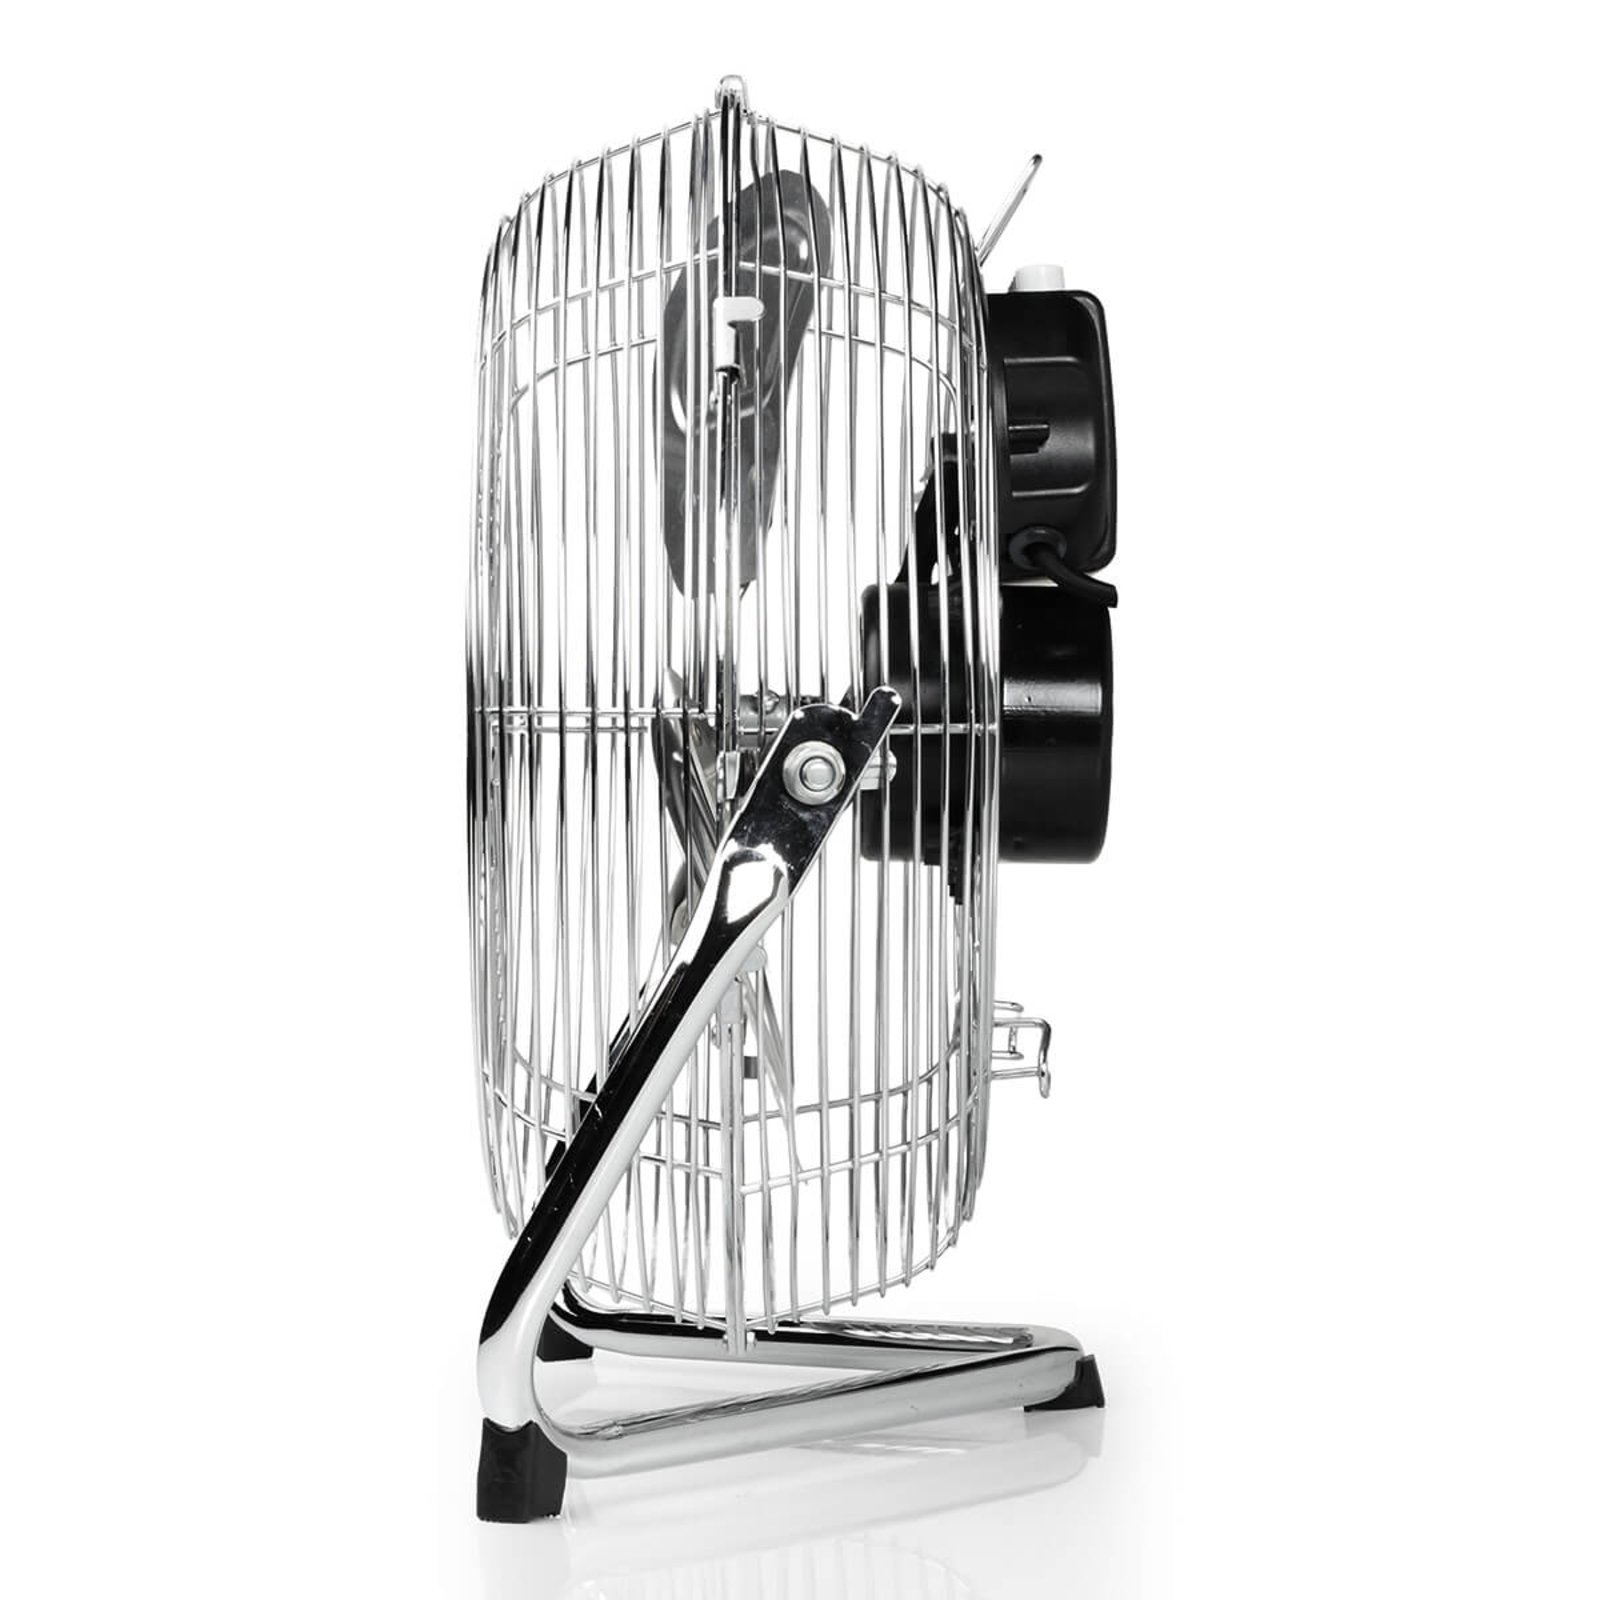 VE5933 three-speed pedestal fan